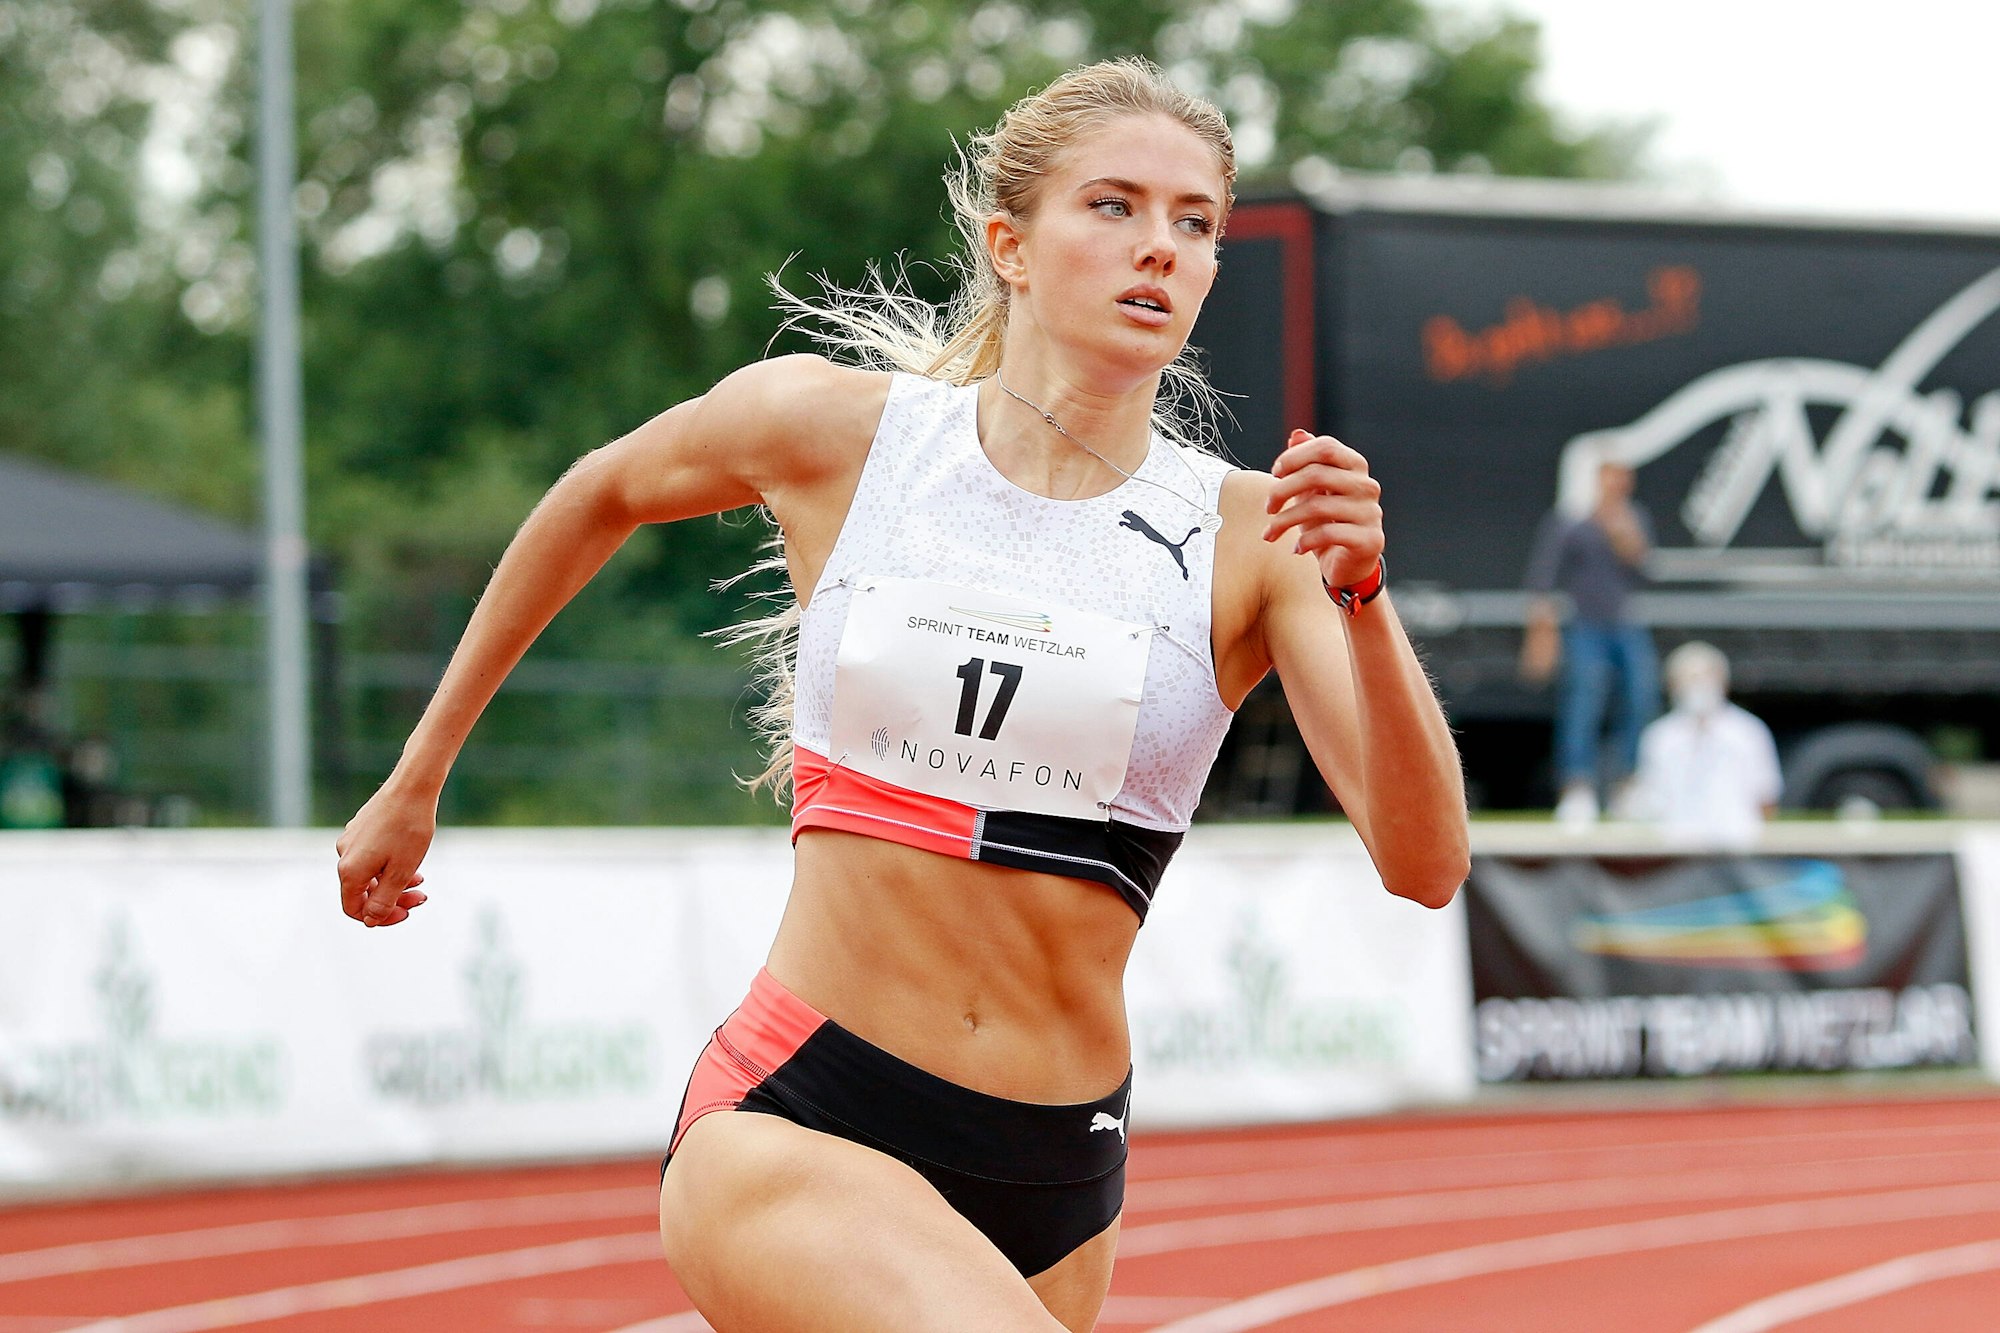 Leichtathletik-Star Alica Schmidt läuft in Wetzlar.